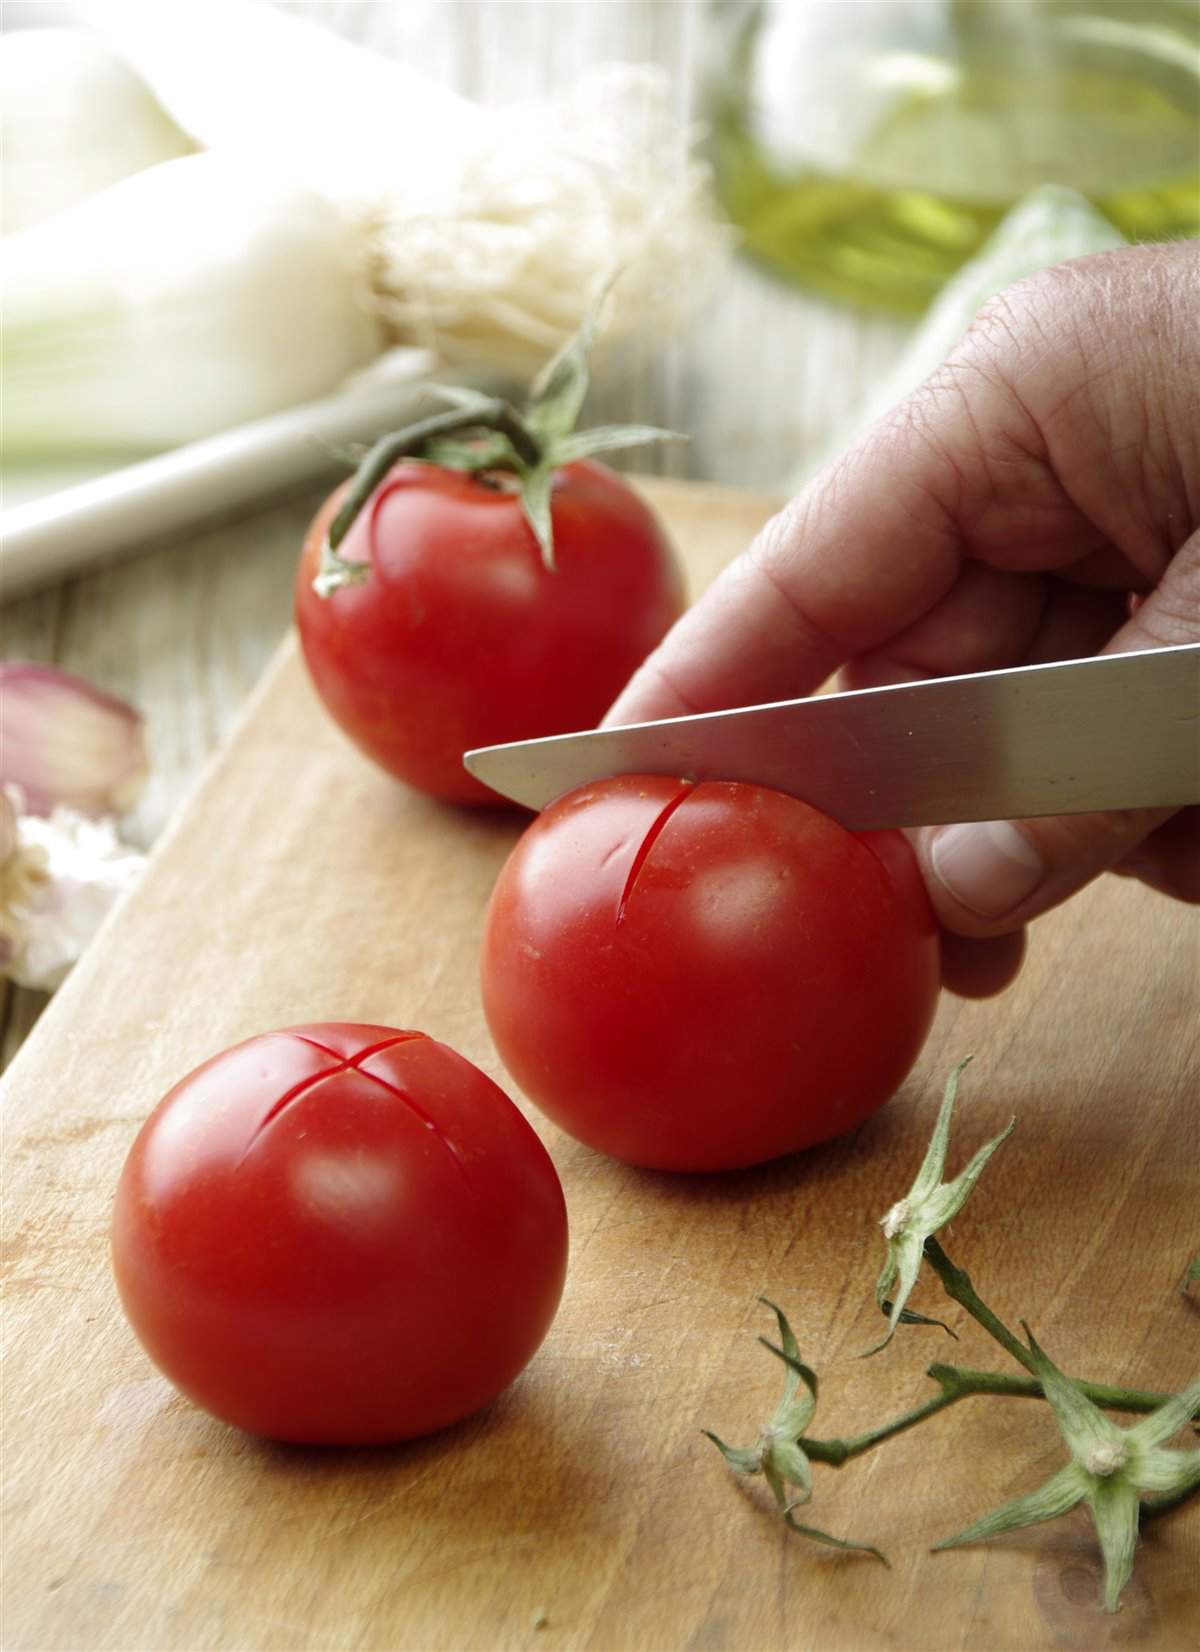 2. Escalda los tomates